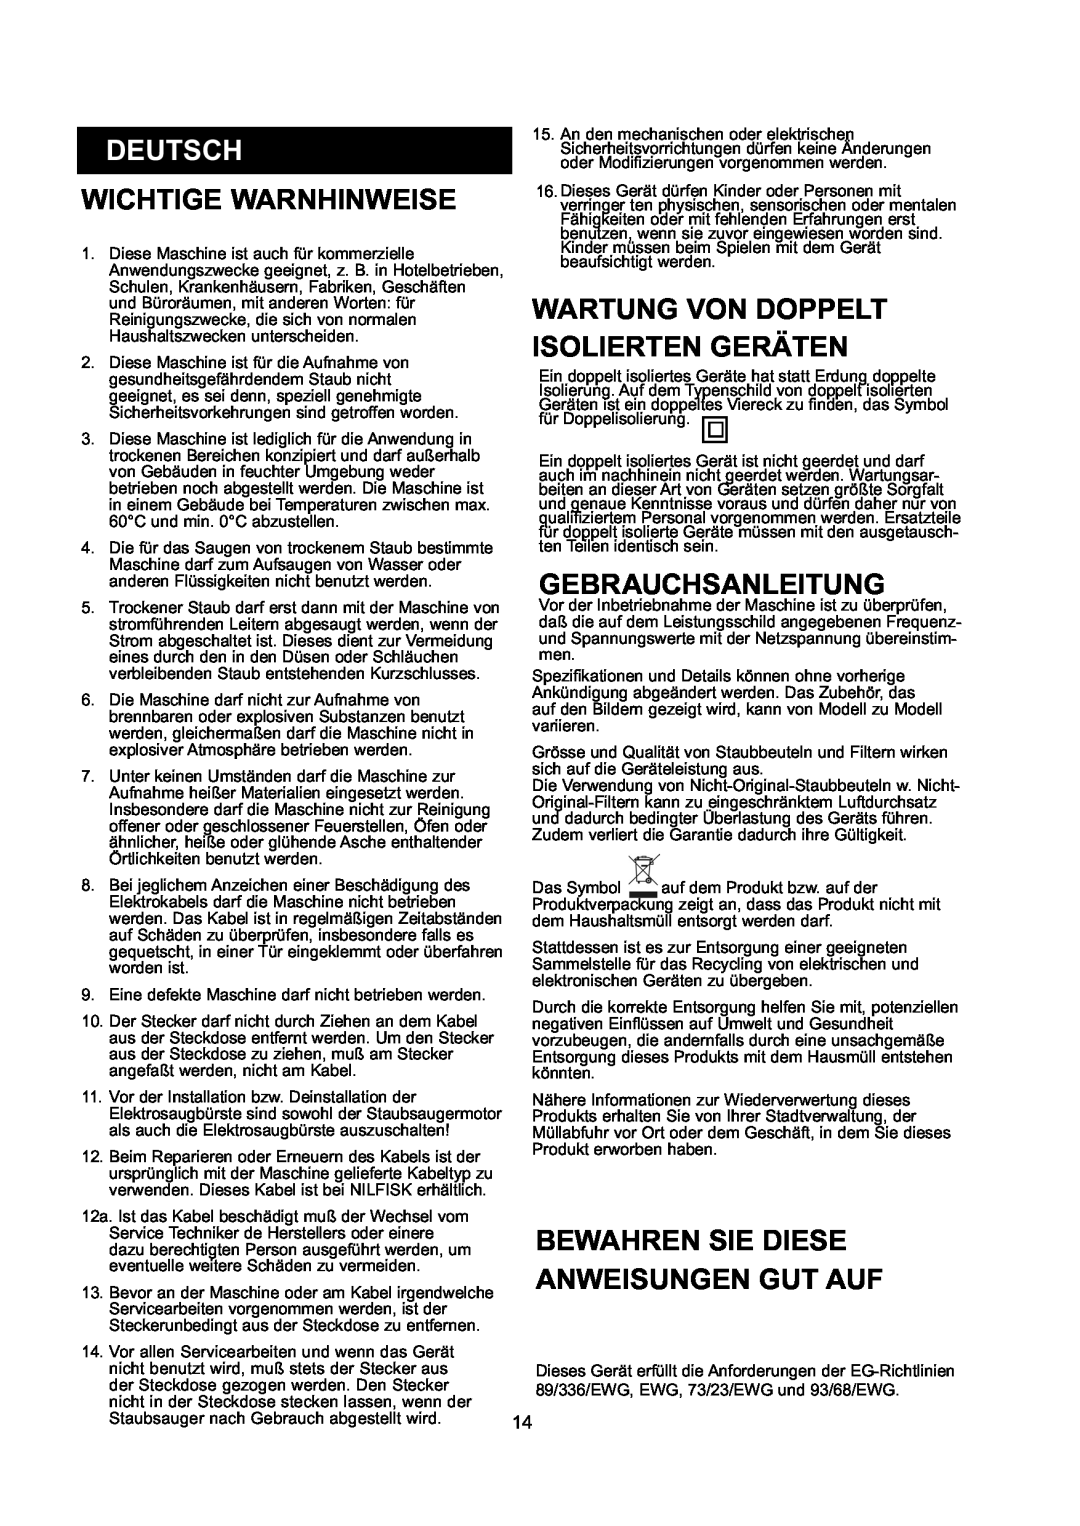 Nilfisk-ALTO GD 10 Back manual Deutsch, Wichtige Warnhinweise, Wartung Von Doppelt Isolierten Geräten, Gebrauchsanleitung 